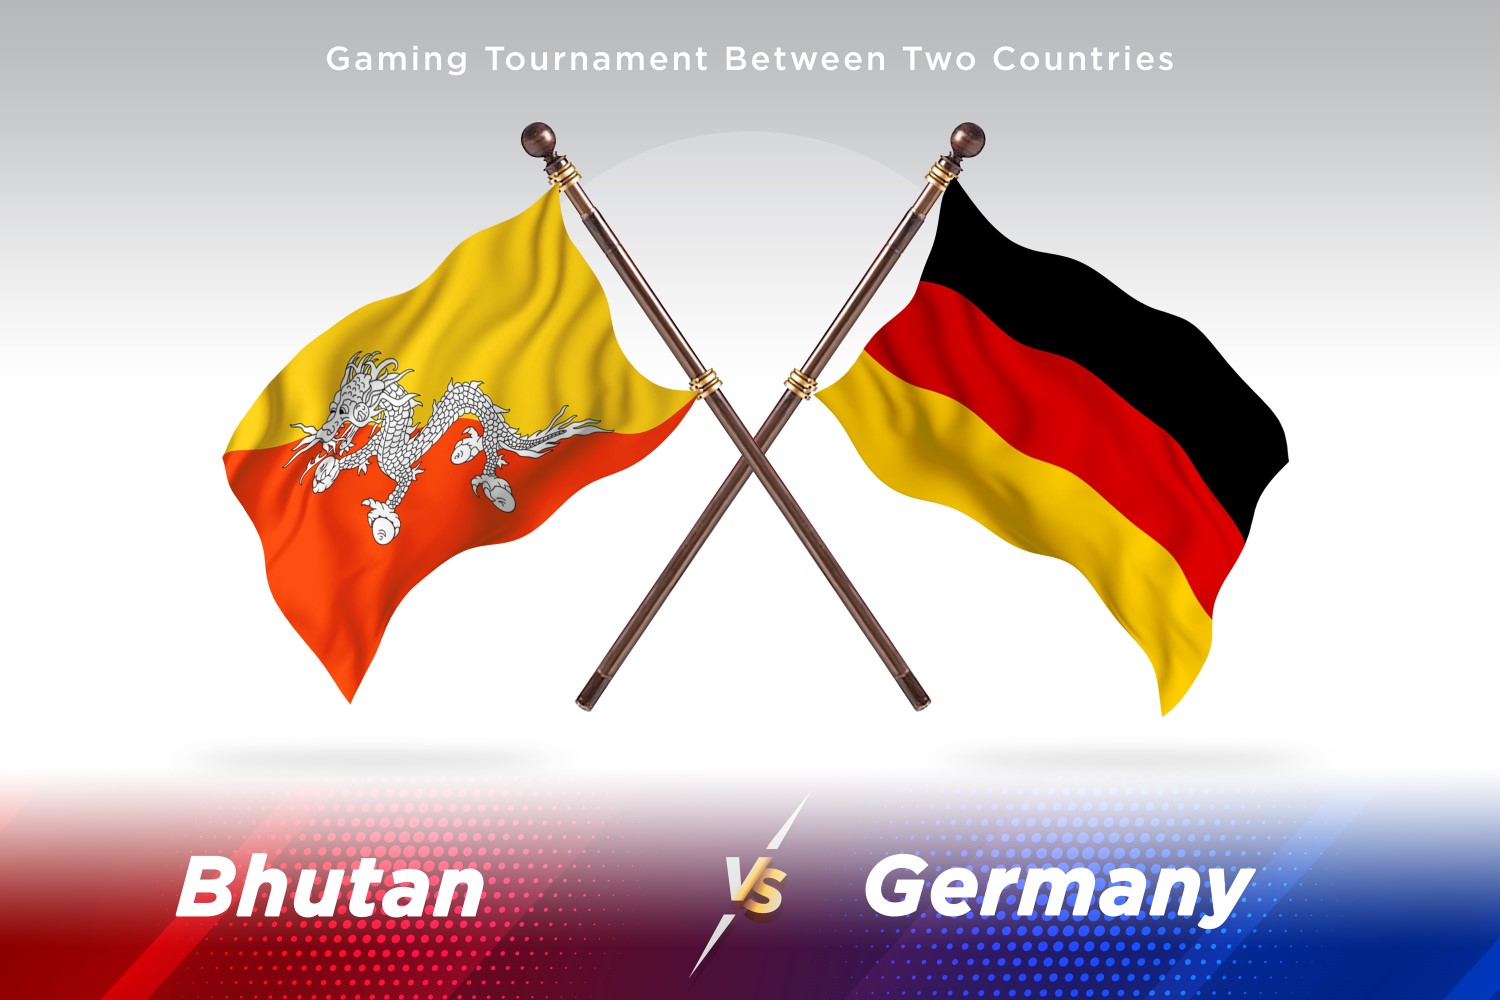 Bhutan versus Germany Two Flags